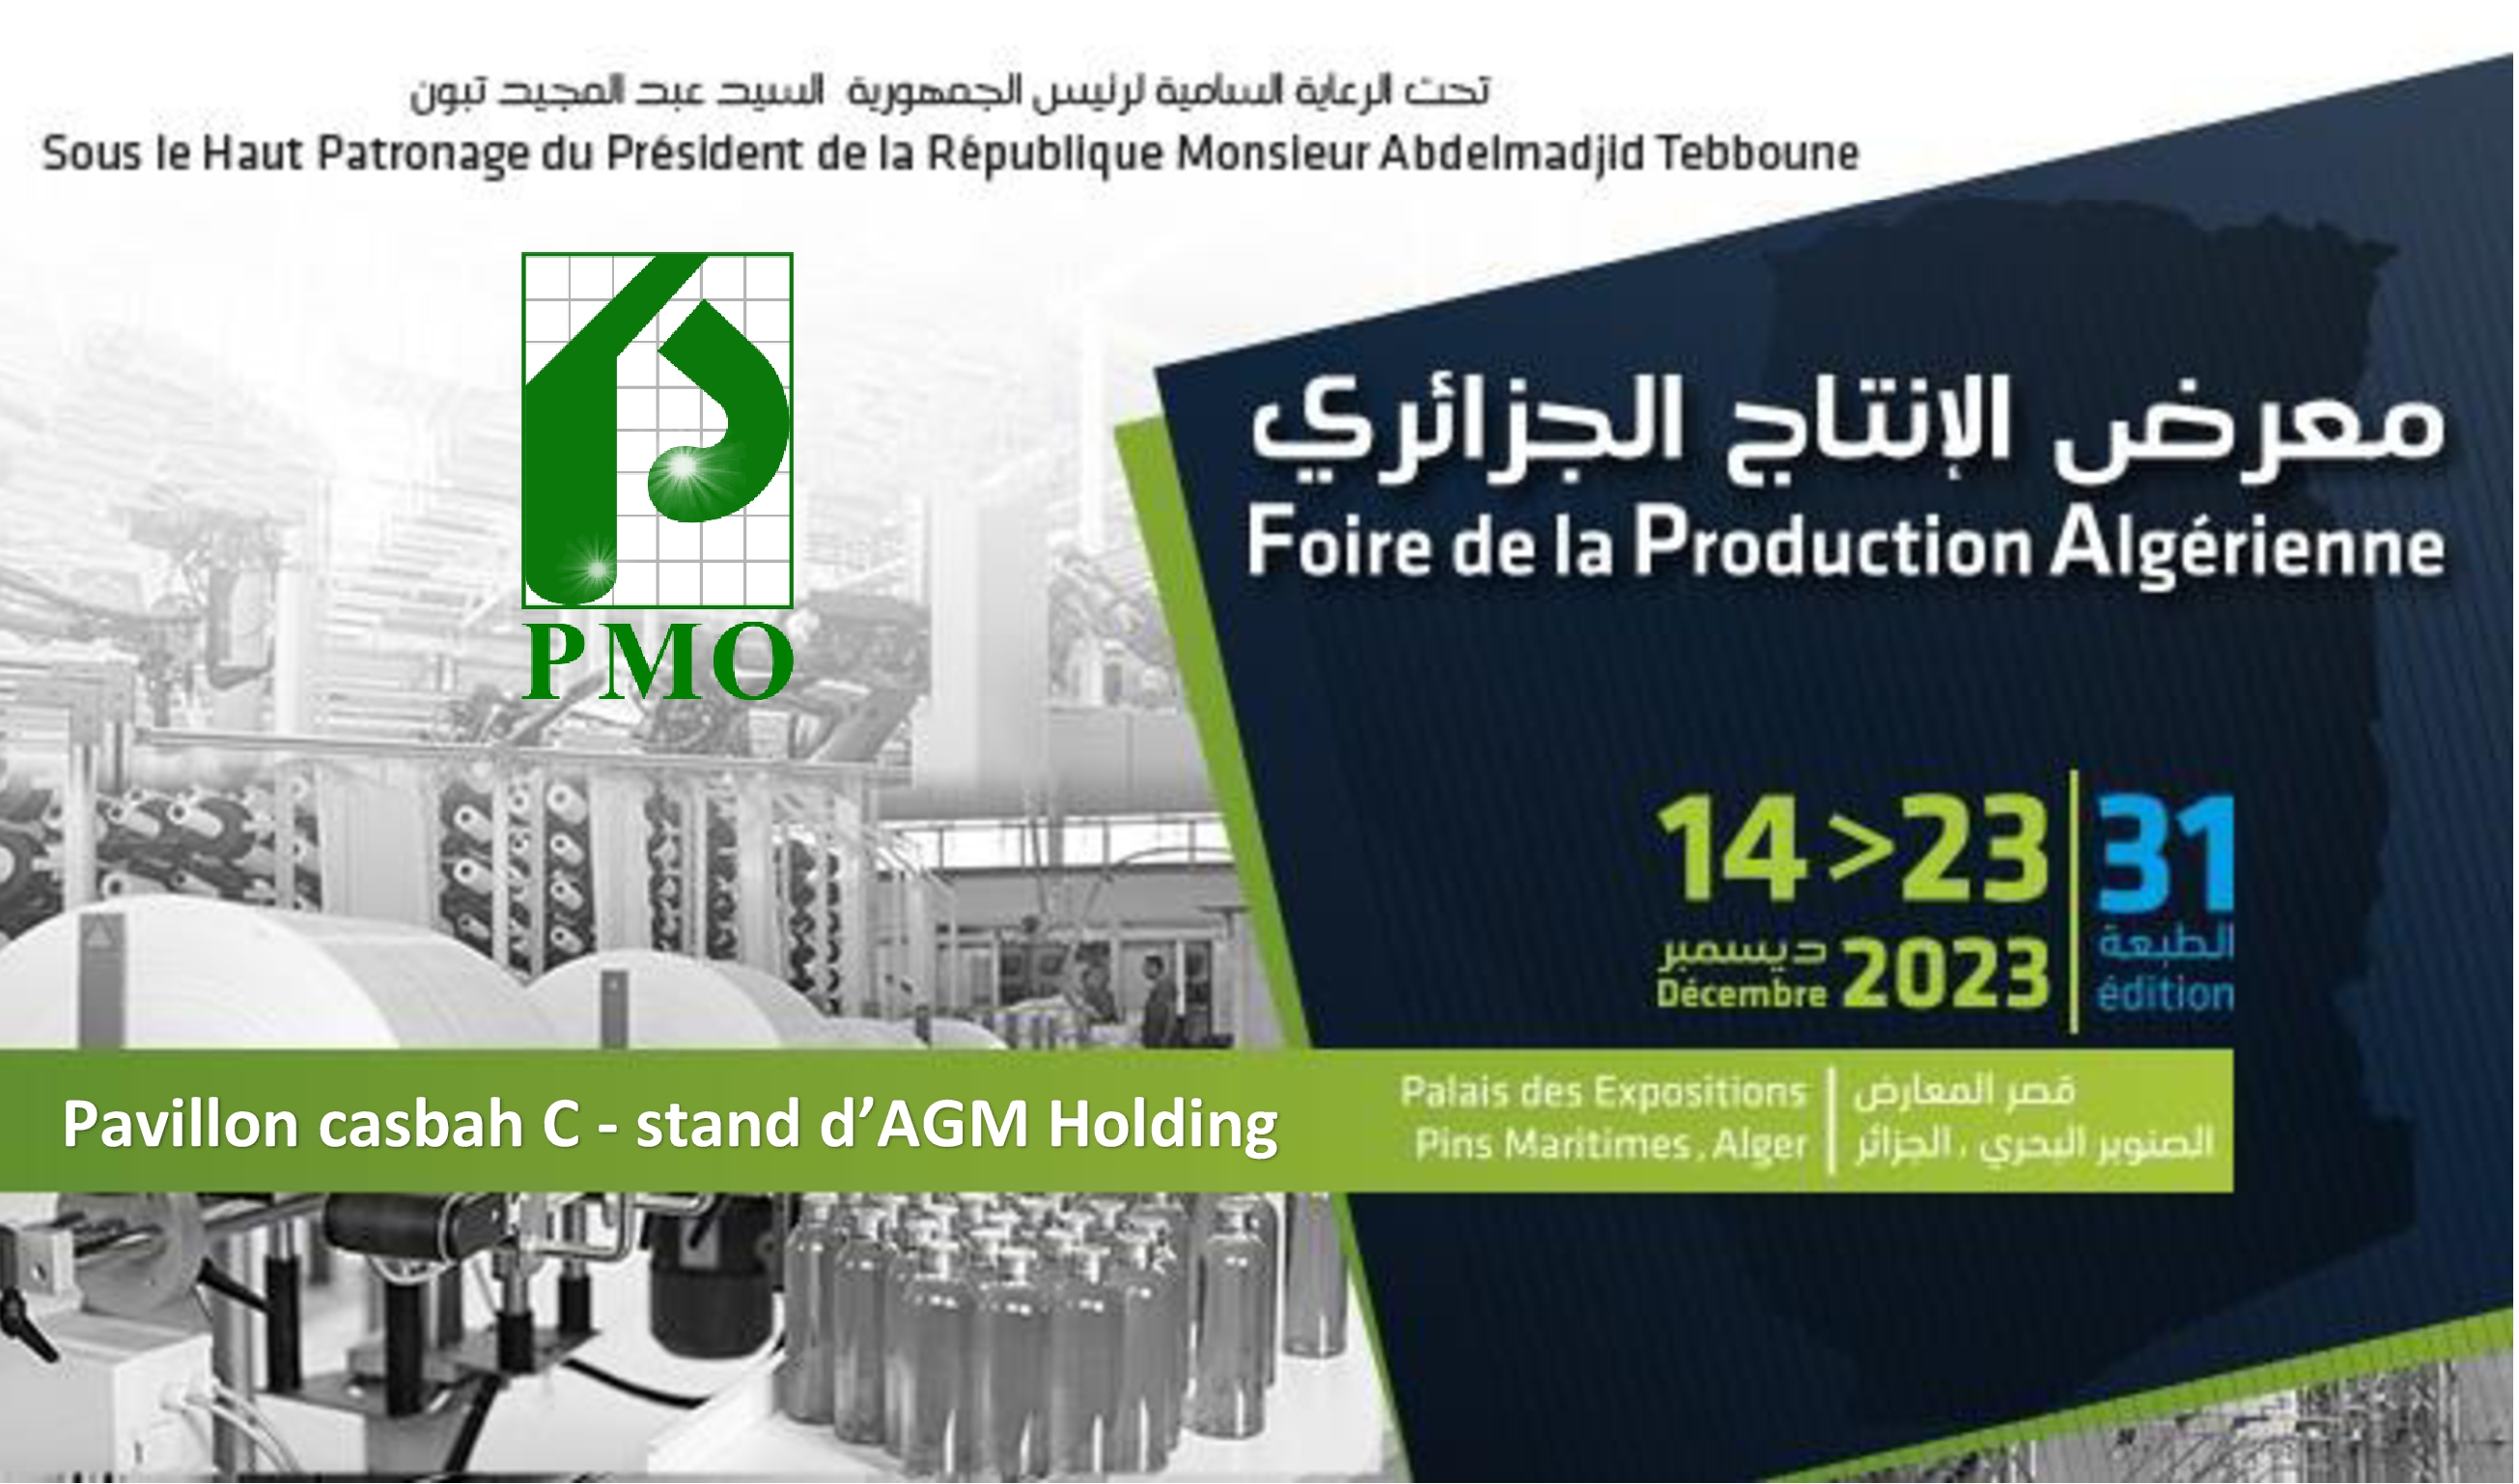 participation à la 31ème édition de la foire de la production algérienne FPA, qui se tiendra du 14 au 23 décembre 2023 au palais des expositions pins maritimes d'Alger